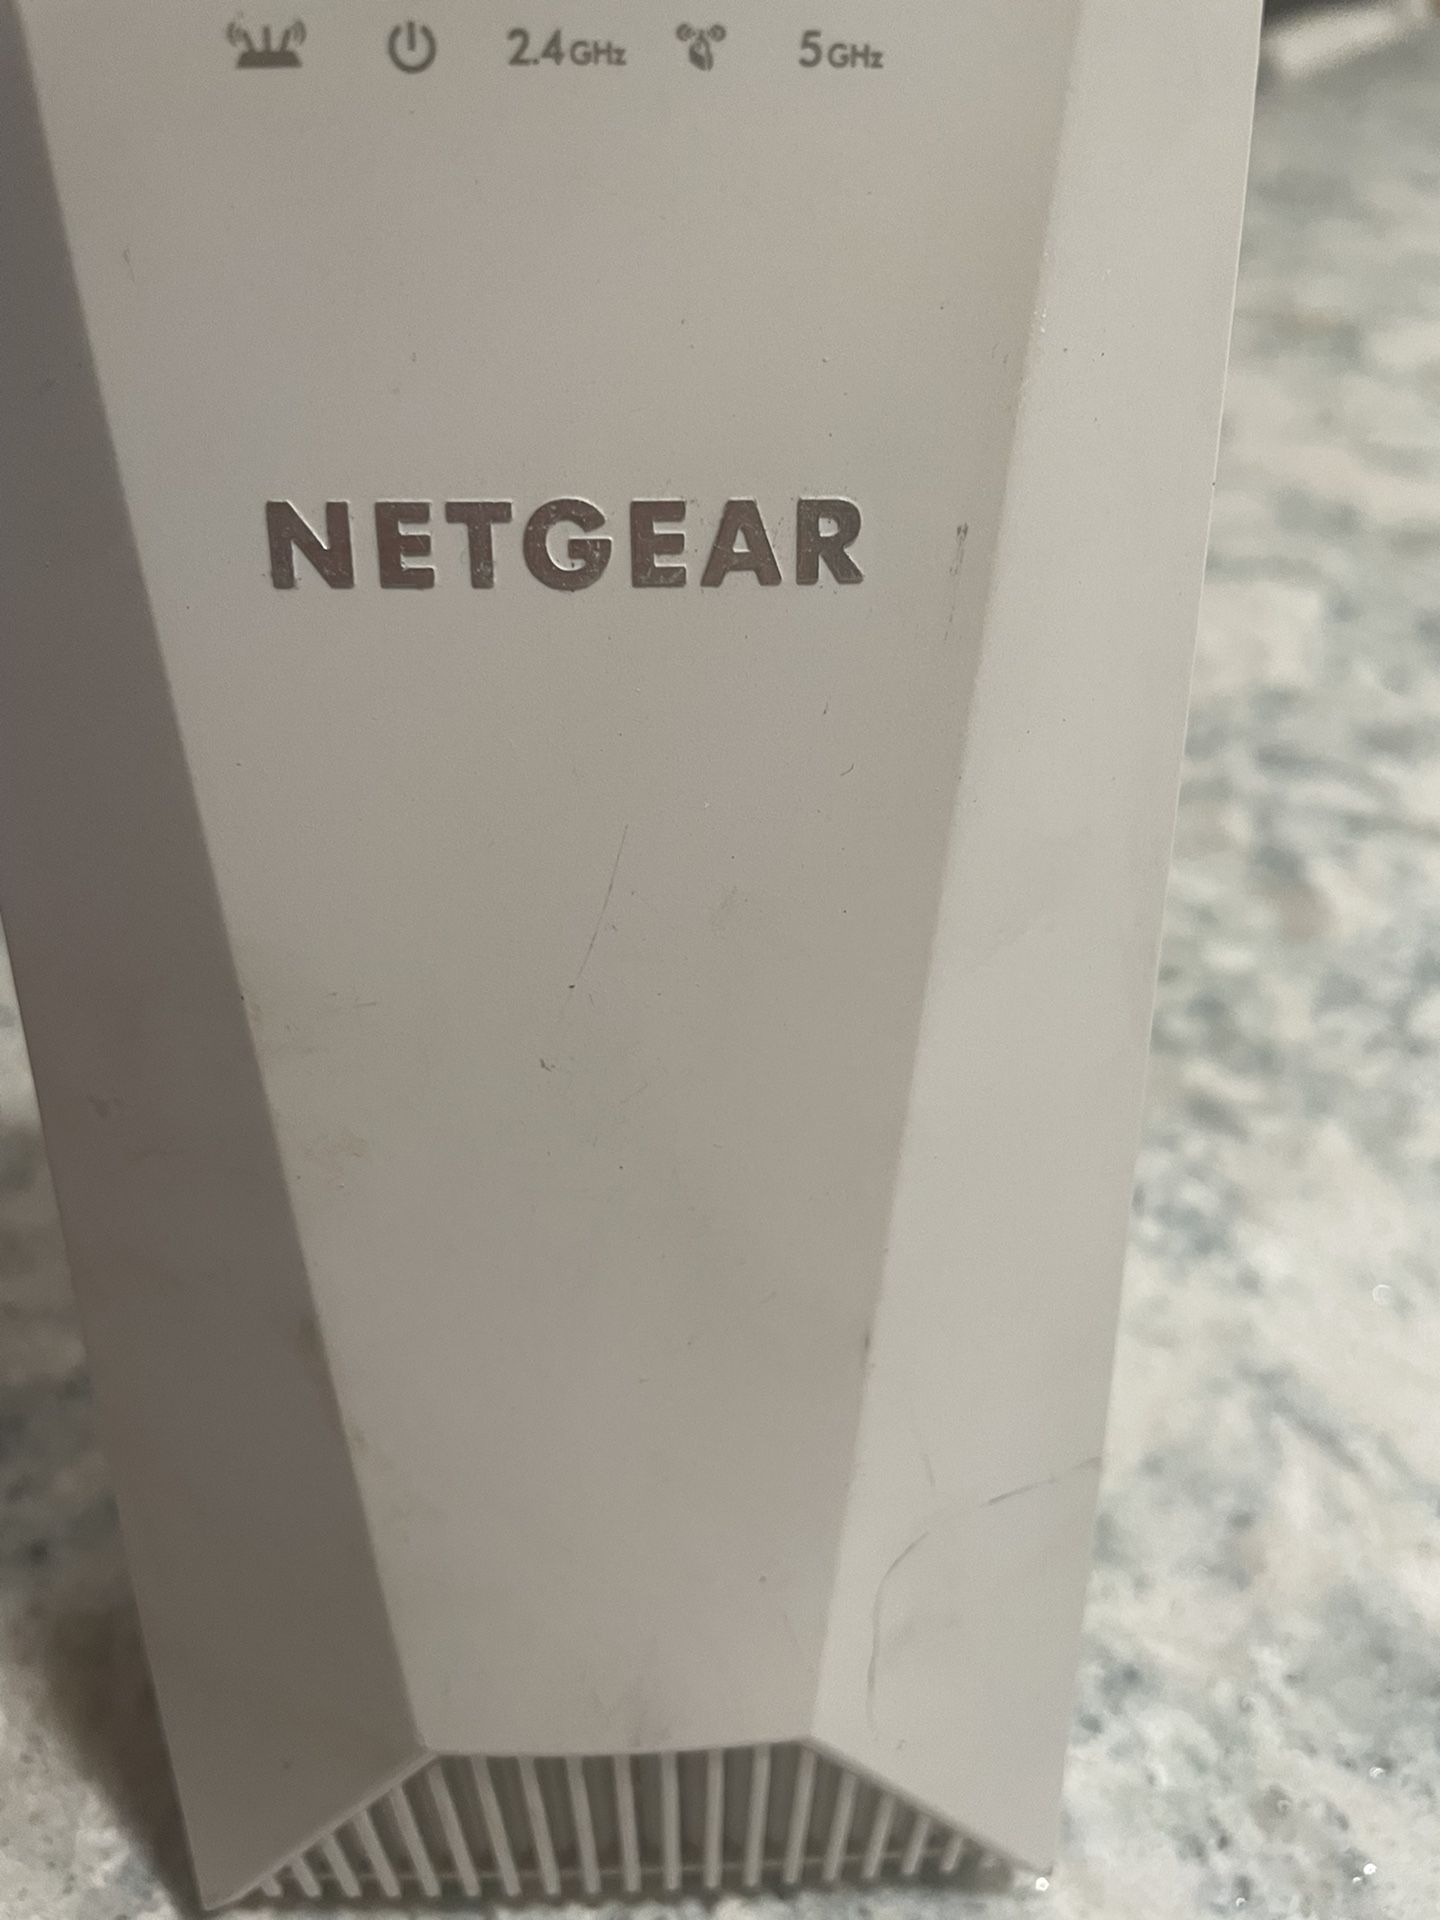 Netgear Nighthawk X4s WiFi Range Extender 